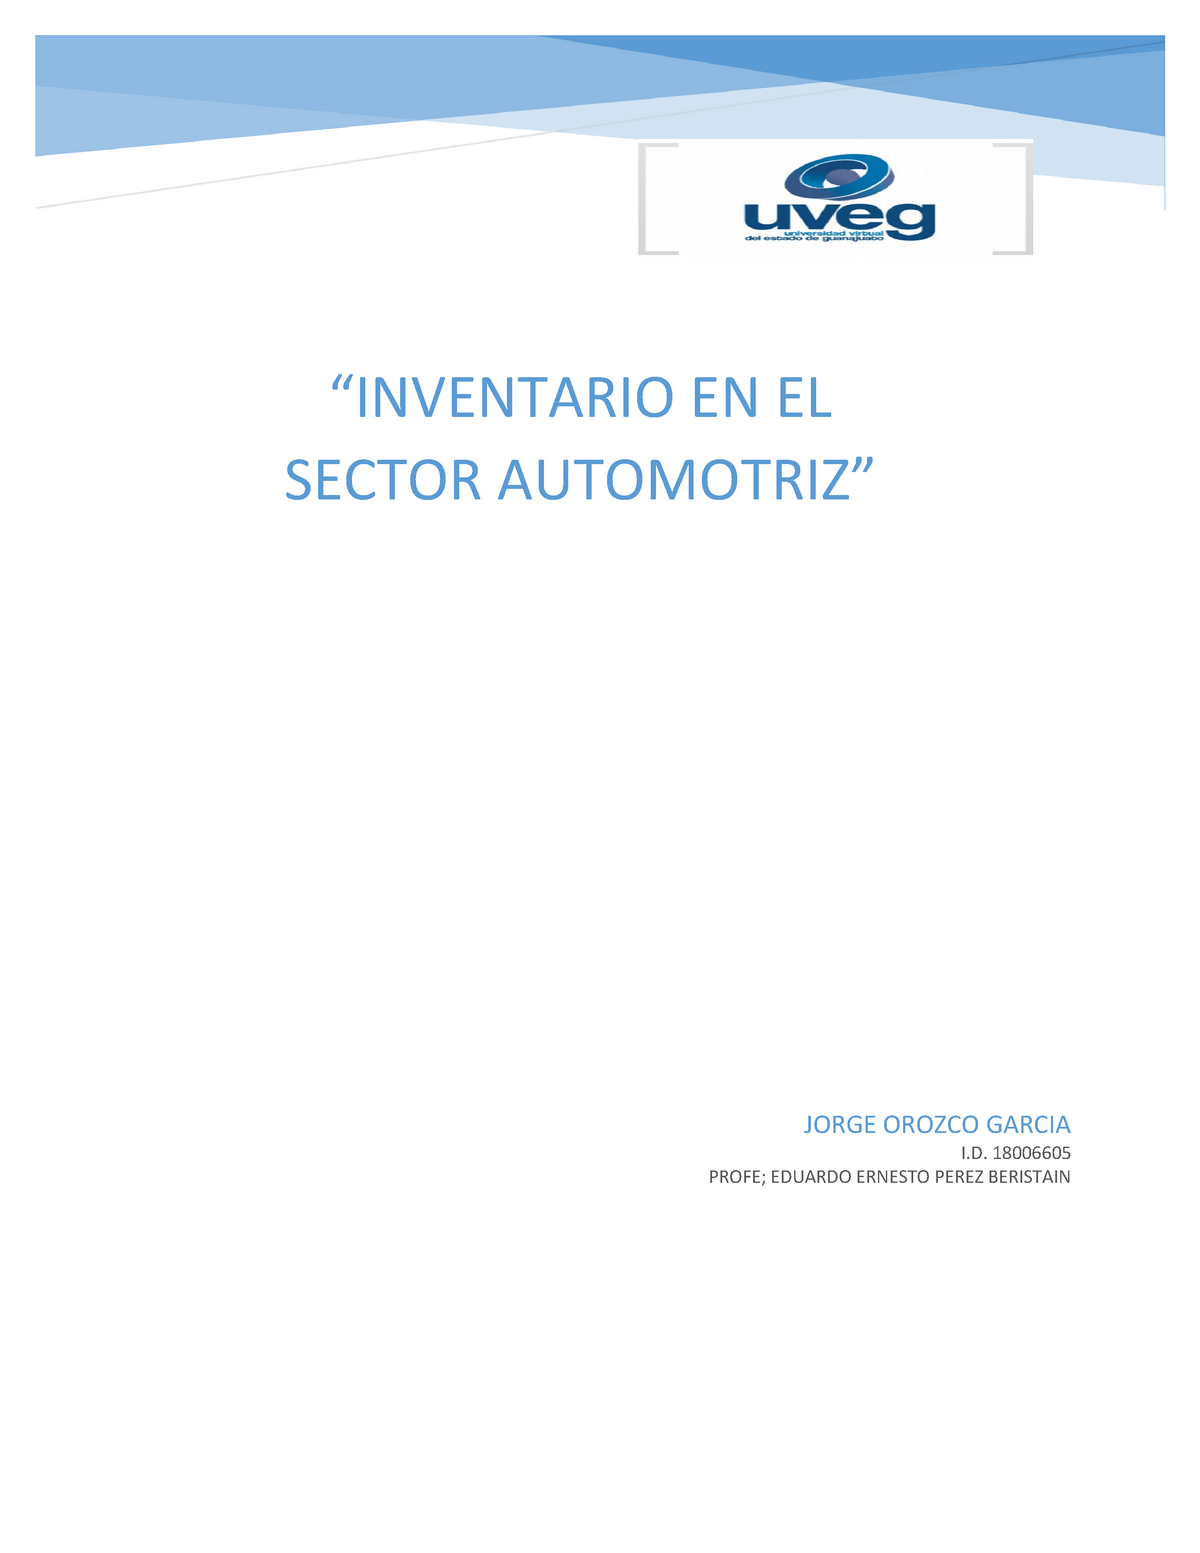 Inventario Automotriz Uveg “inventario En El Sector Automotriz” Jorge Orozco Garcia I 2603